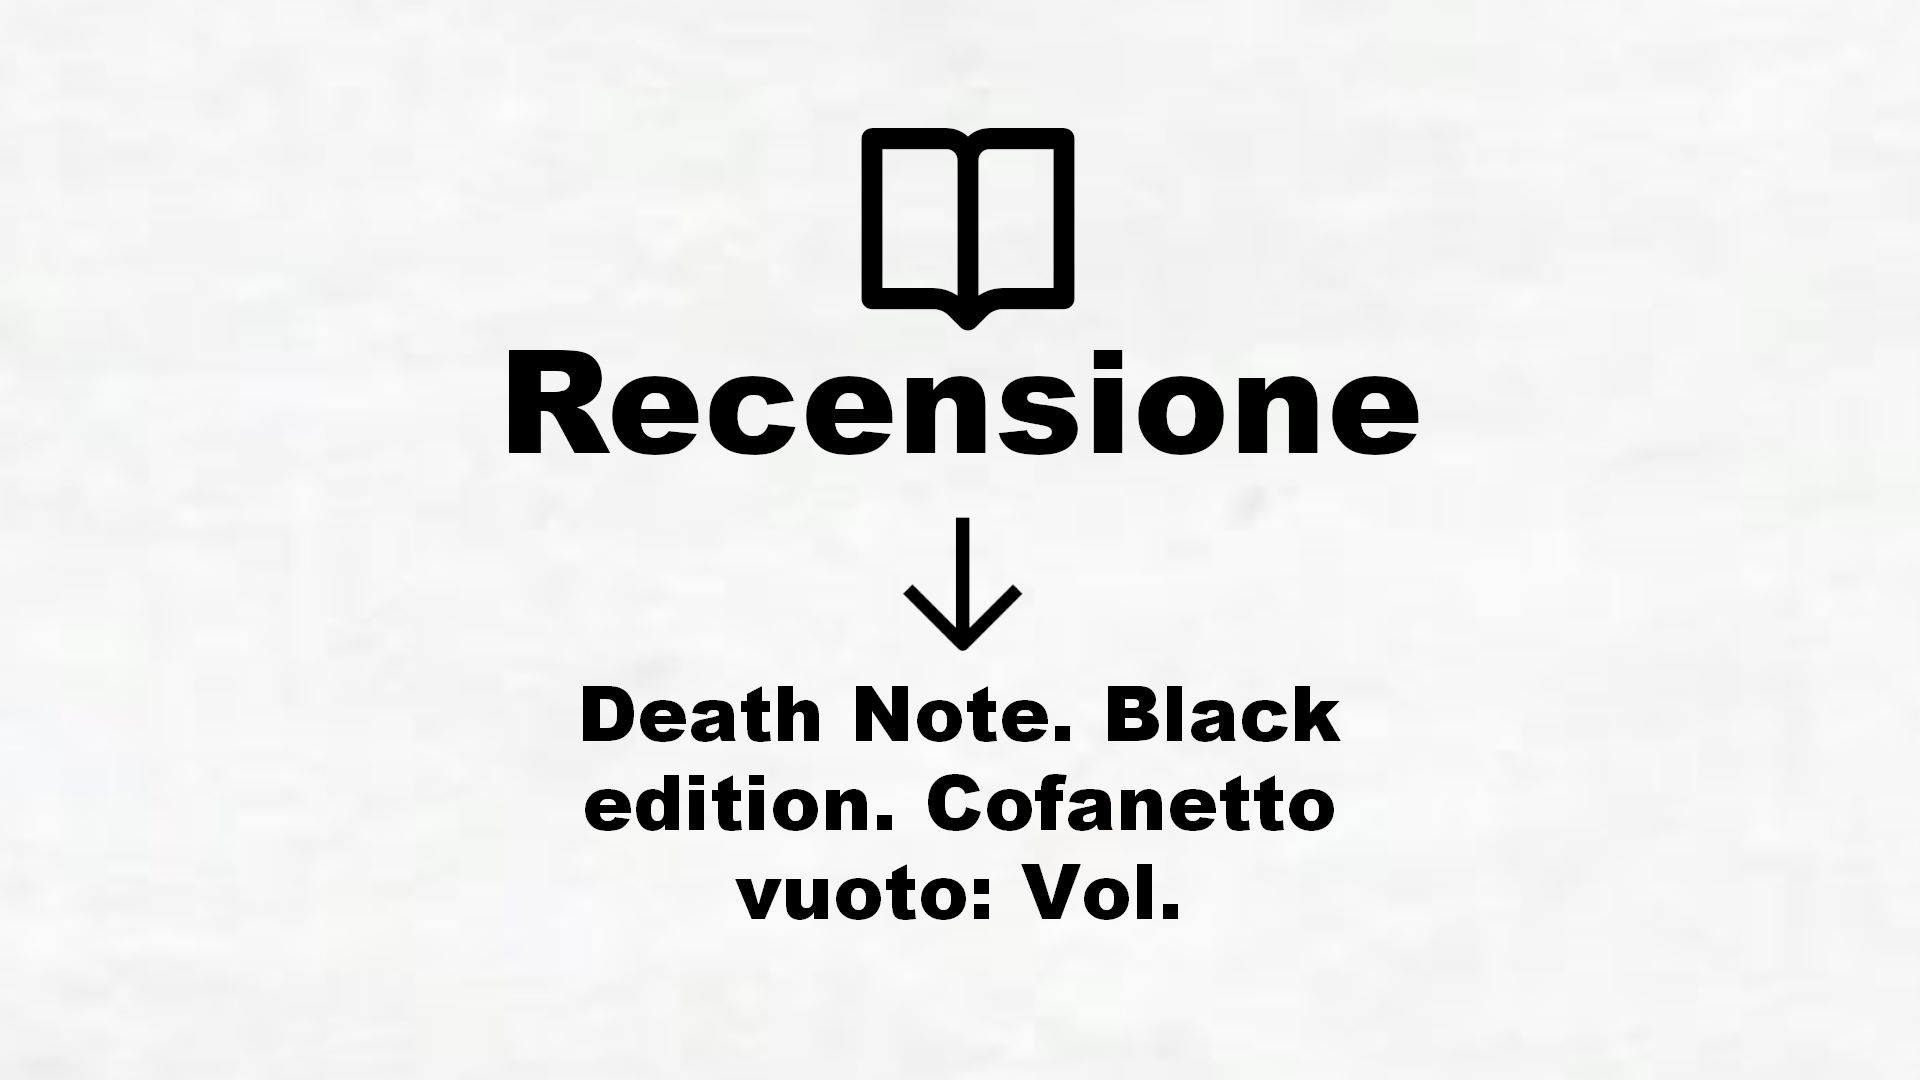 Death Note. Black edition. Cofanetto vuoto: Vol. – Recensione Libro